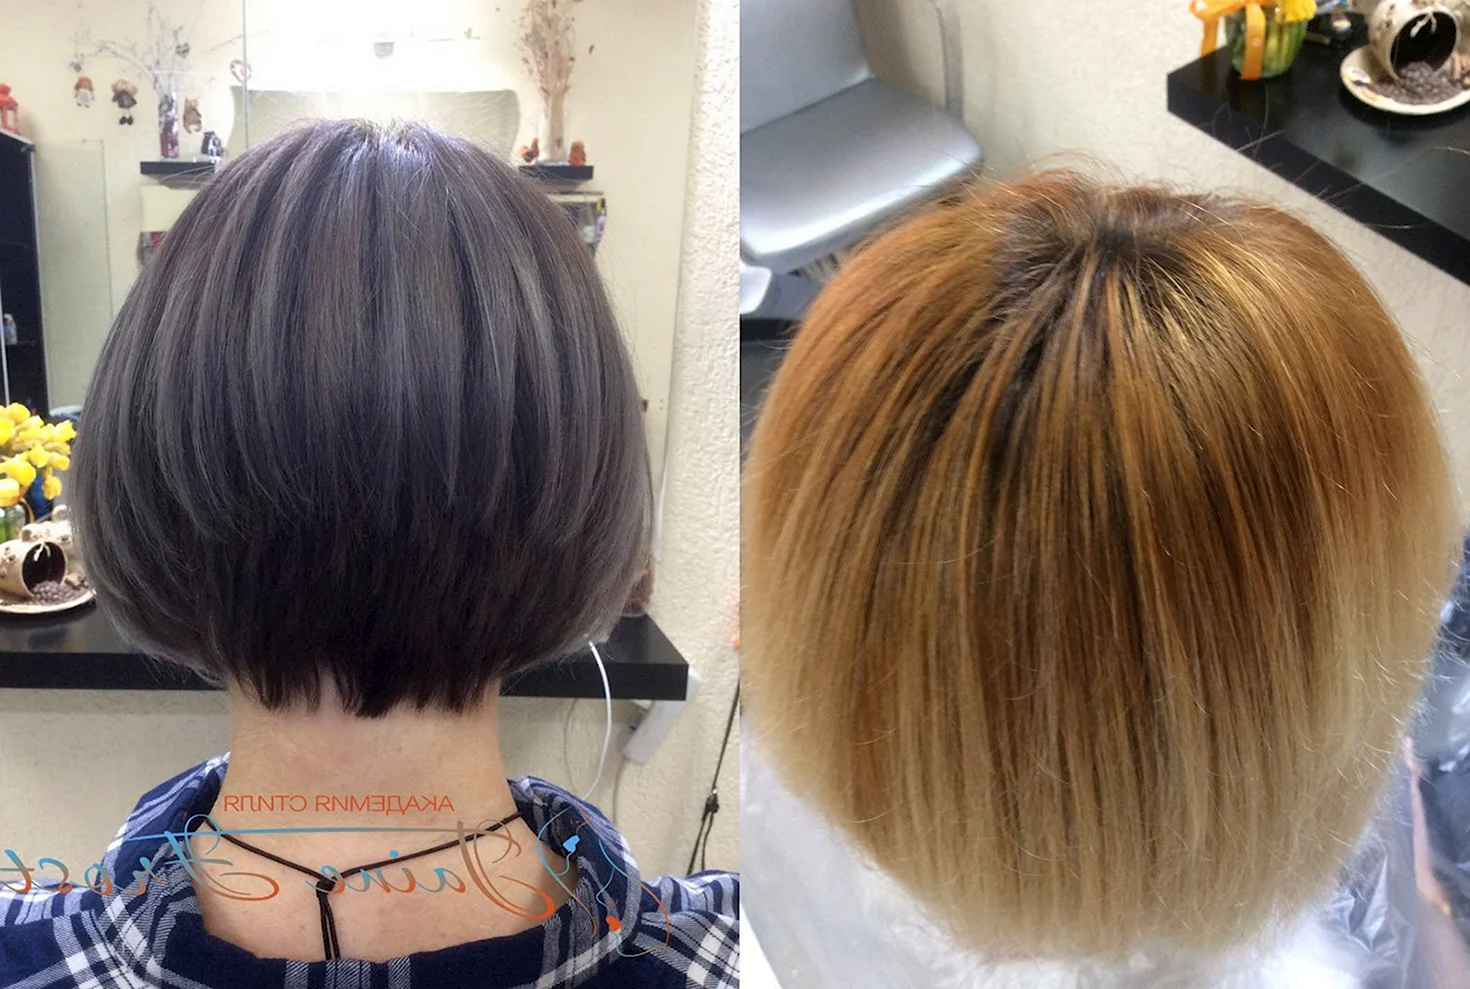 Окрашивание коротких волос до и после